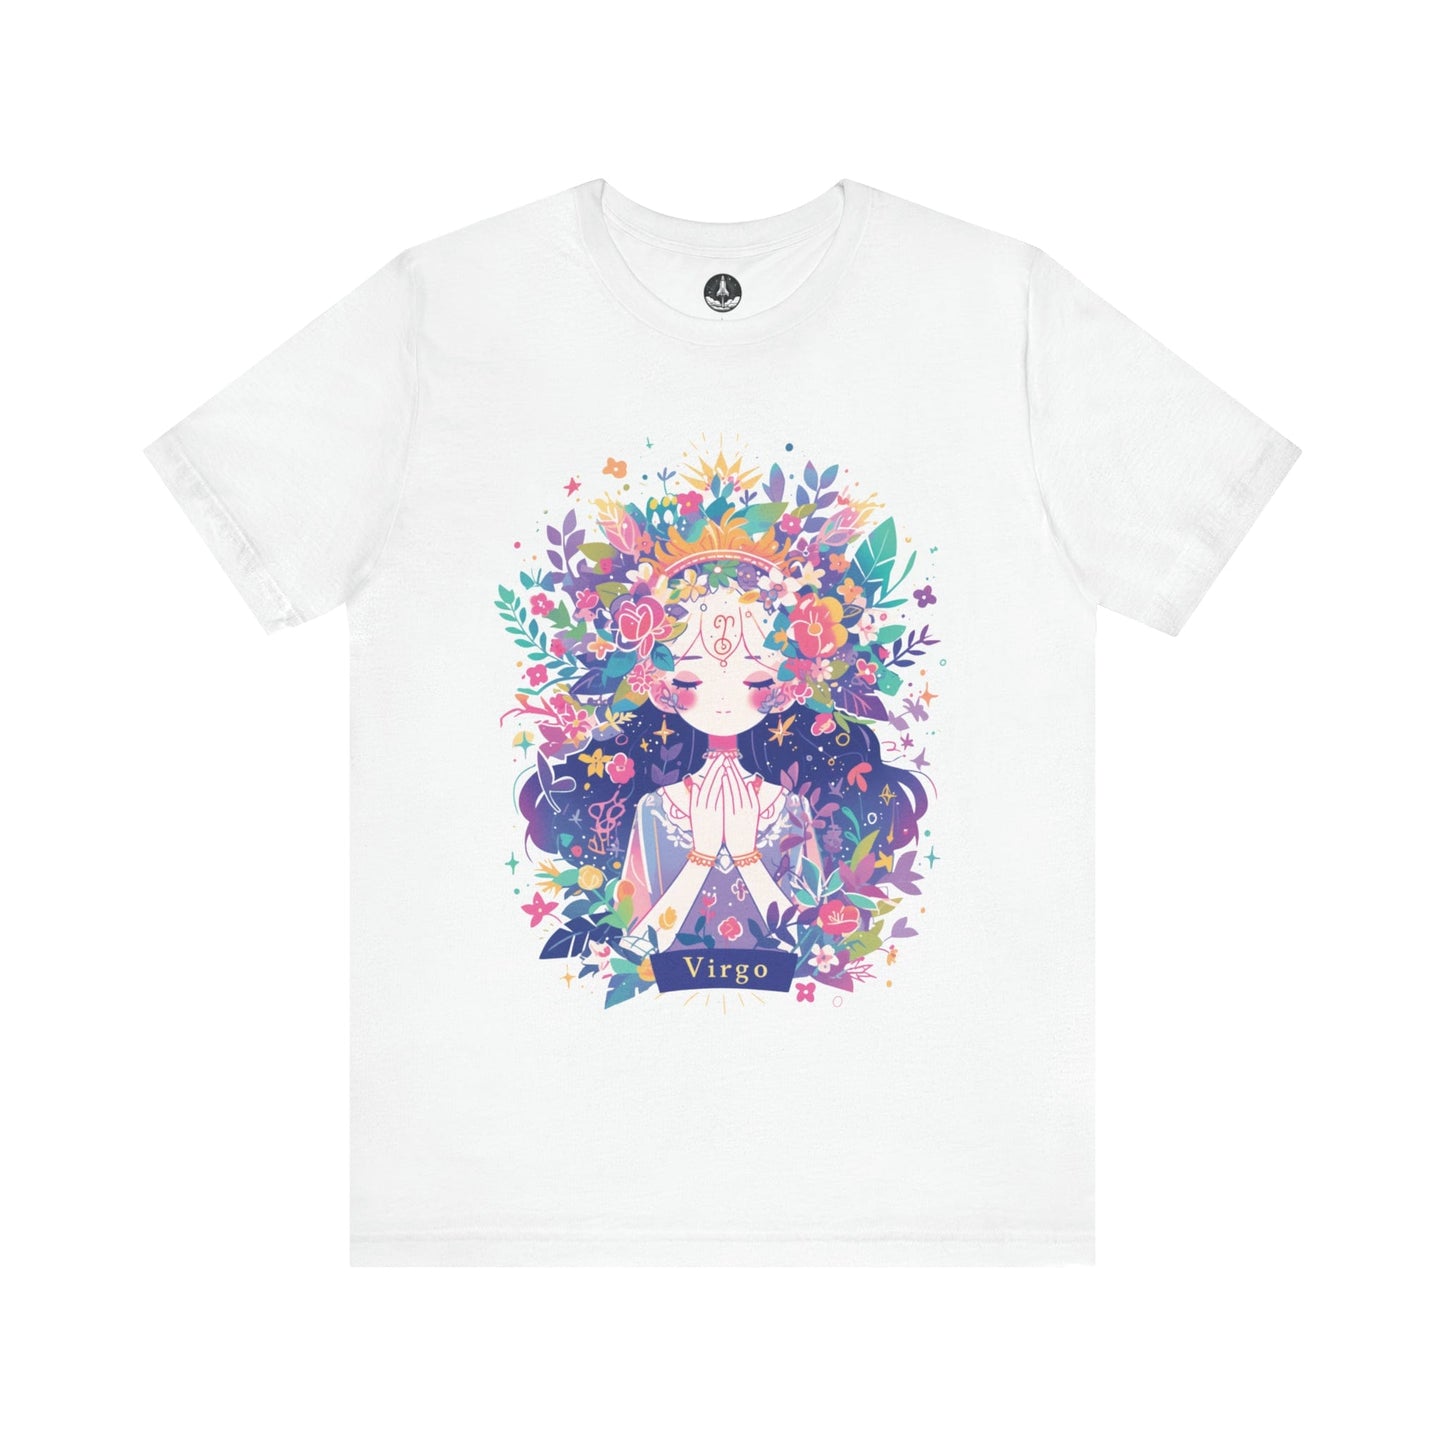 T-Shirt White / S Neon Blossom Virgo TShirt: Luminous Purity